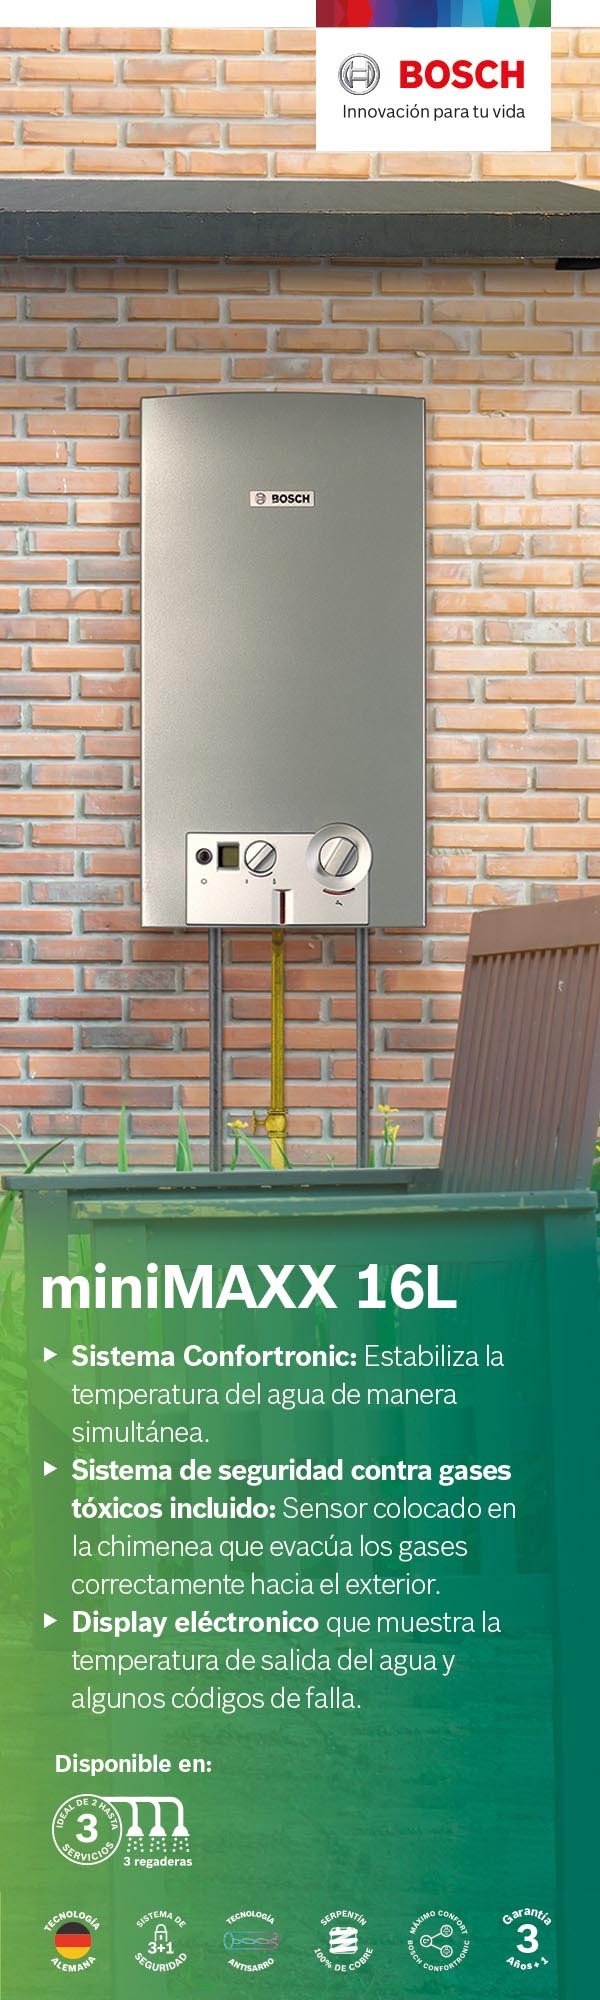 Calentadores de Agua Instantaneo Bosch Minimaxx Home Depot México